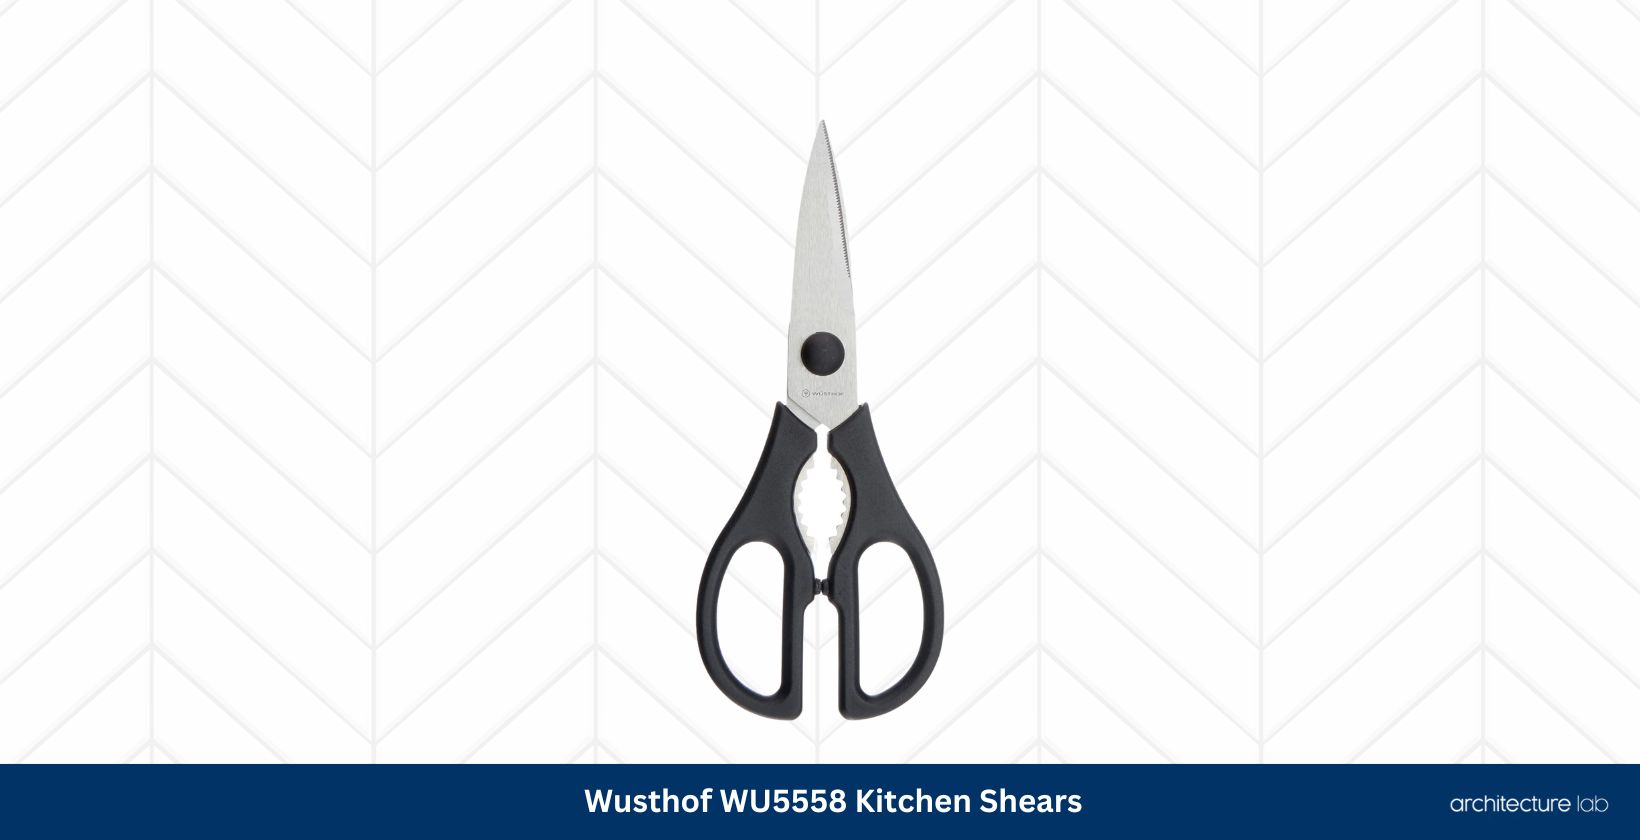 Wusthof wu5558 kitchen shears0